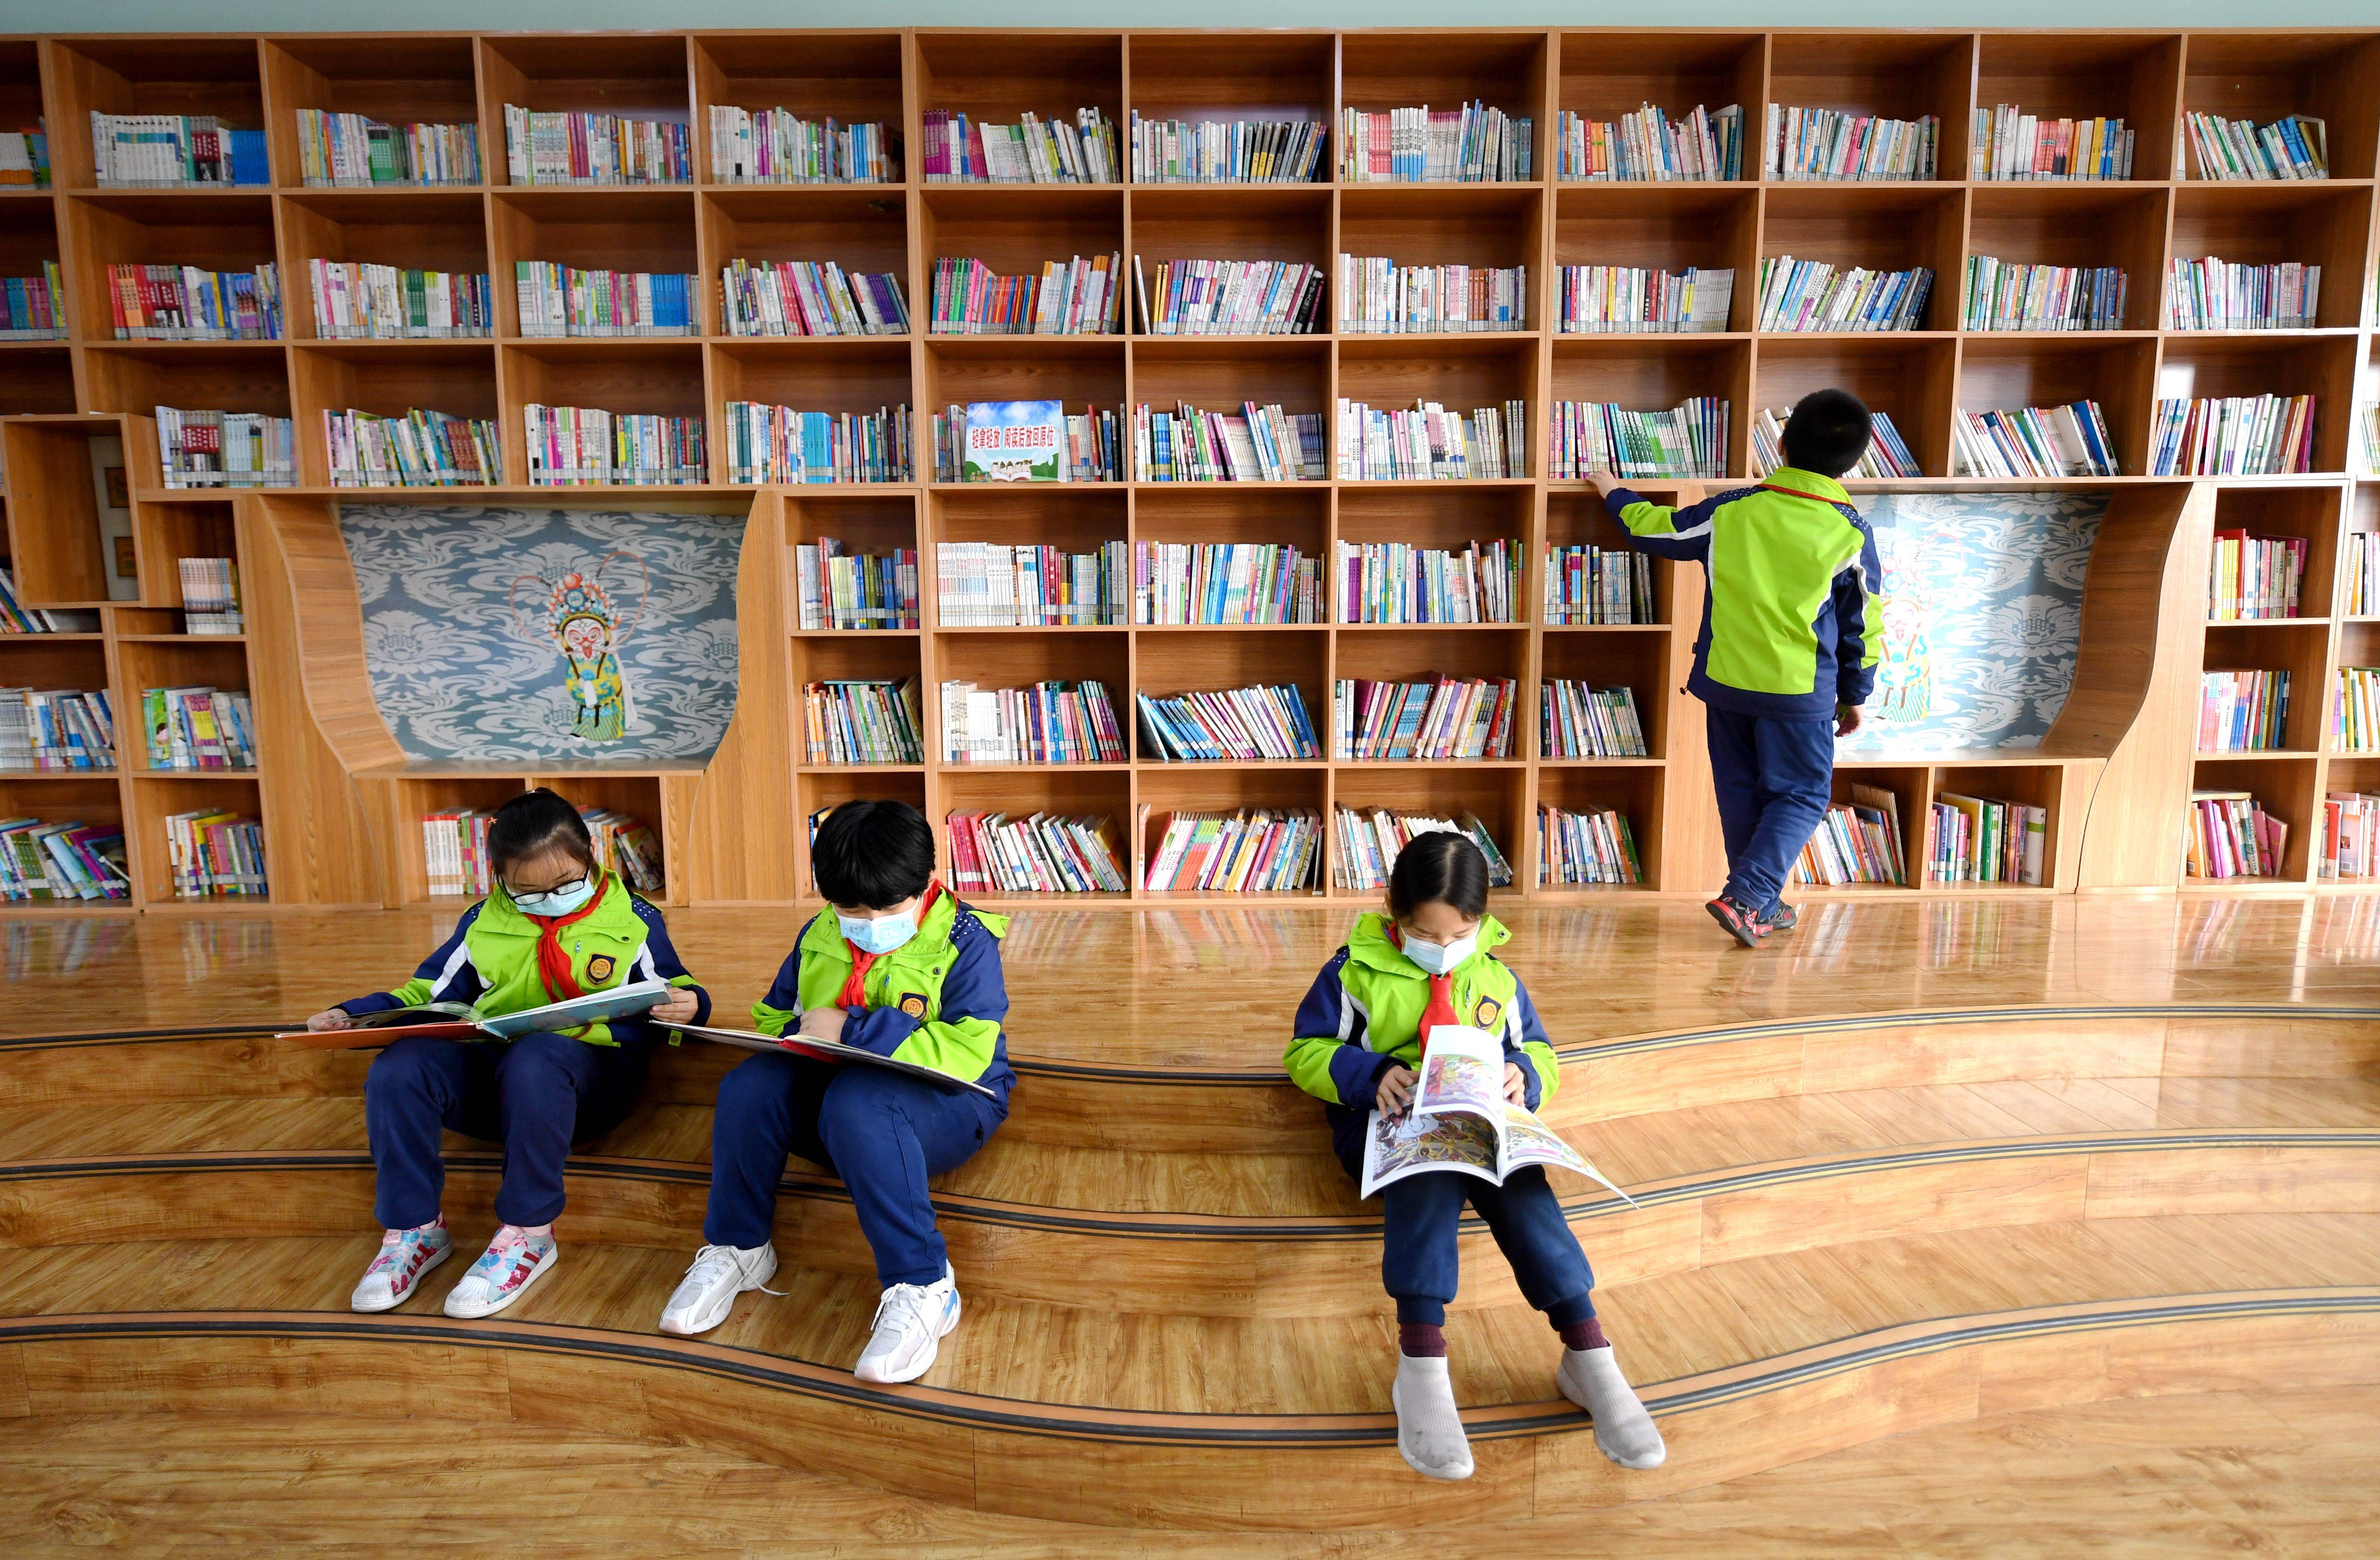 3月11日,石家庄市桥西区裕华西路小学参加课后托管的学生在图书馆读书